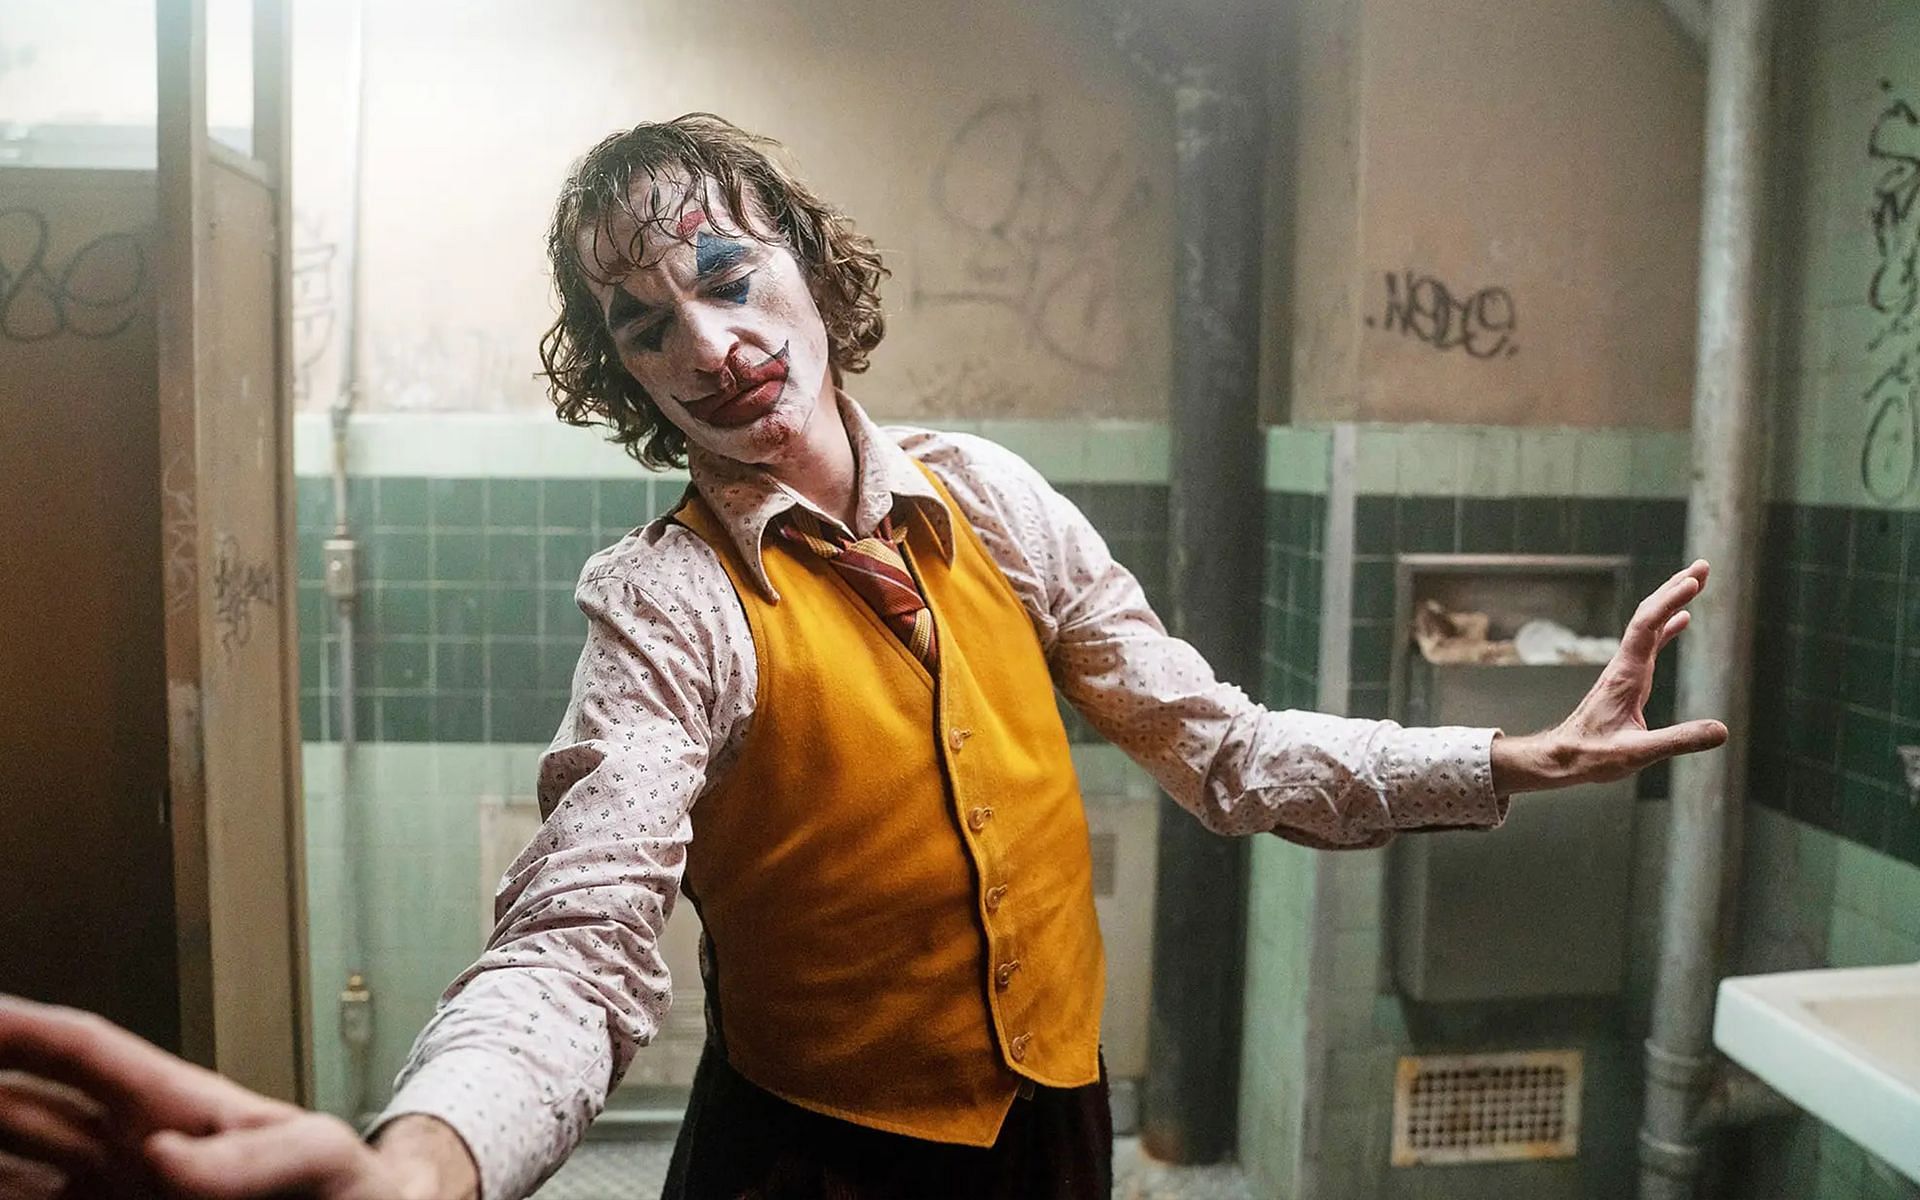 A still from Joker (Image via IMDb)